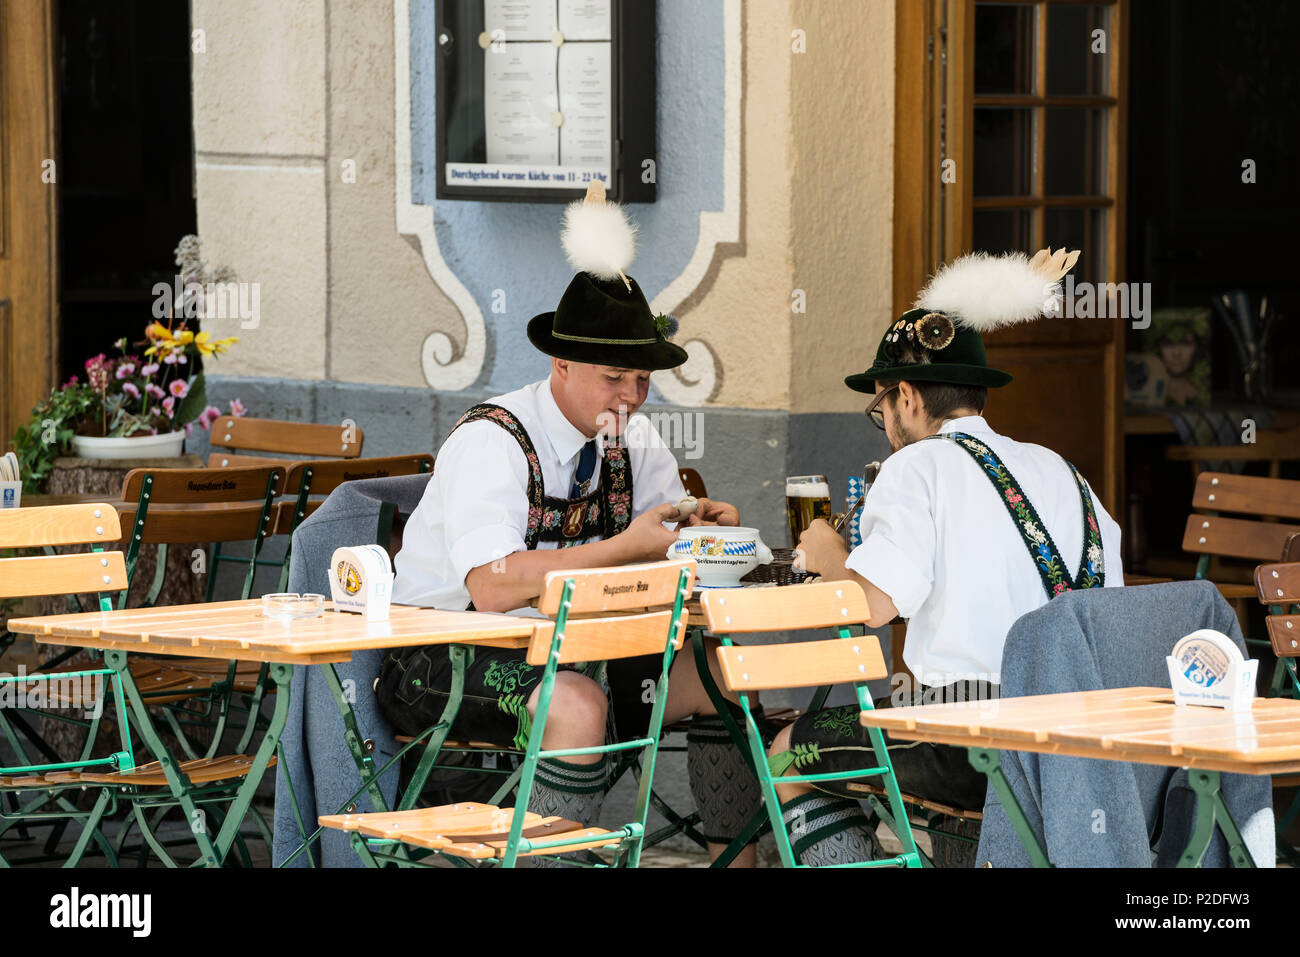 Gli uomini avente una tradizionale salsiccia weisswurst, prozession tradizionali, Garmisch-Partenkirchen, Baviera, Germania Foto Stock